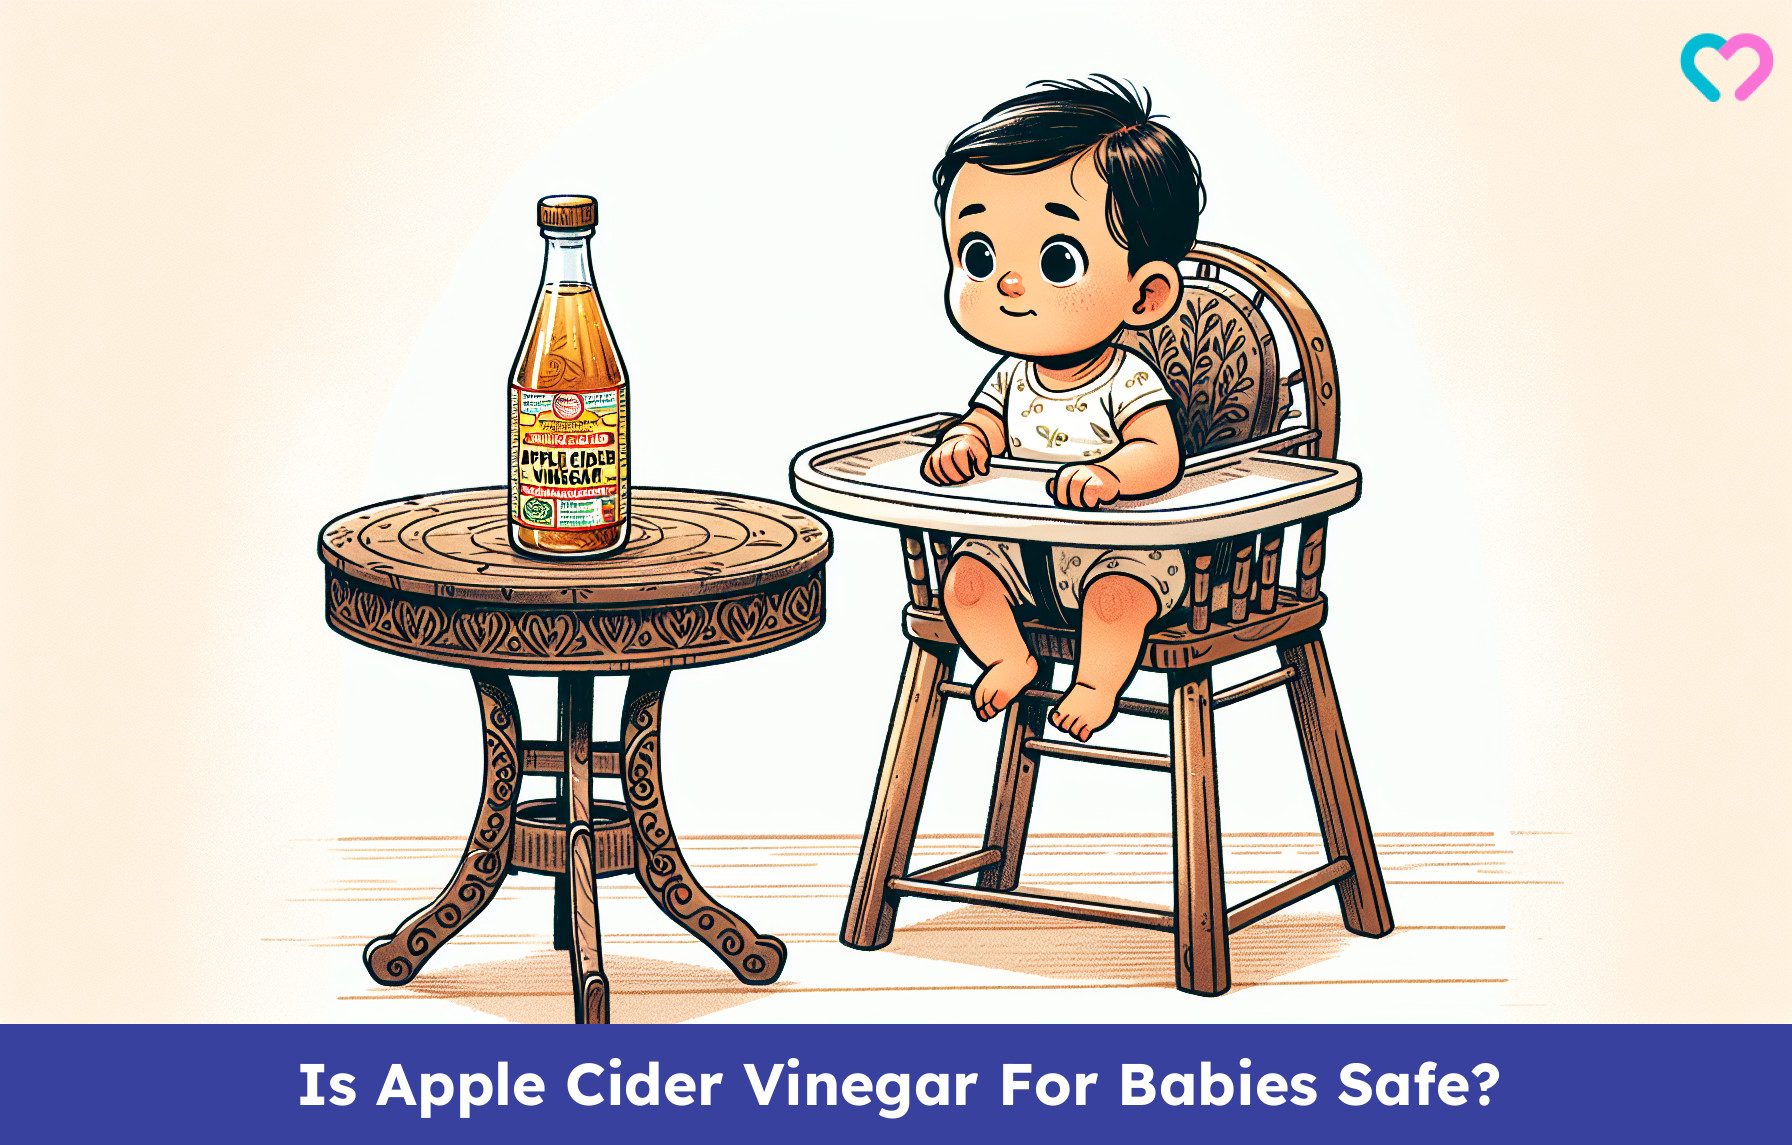 Apple Cider Vinegar For Babies_illustration